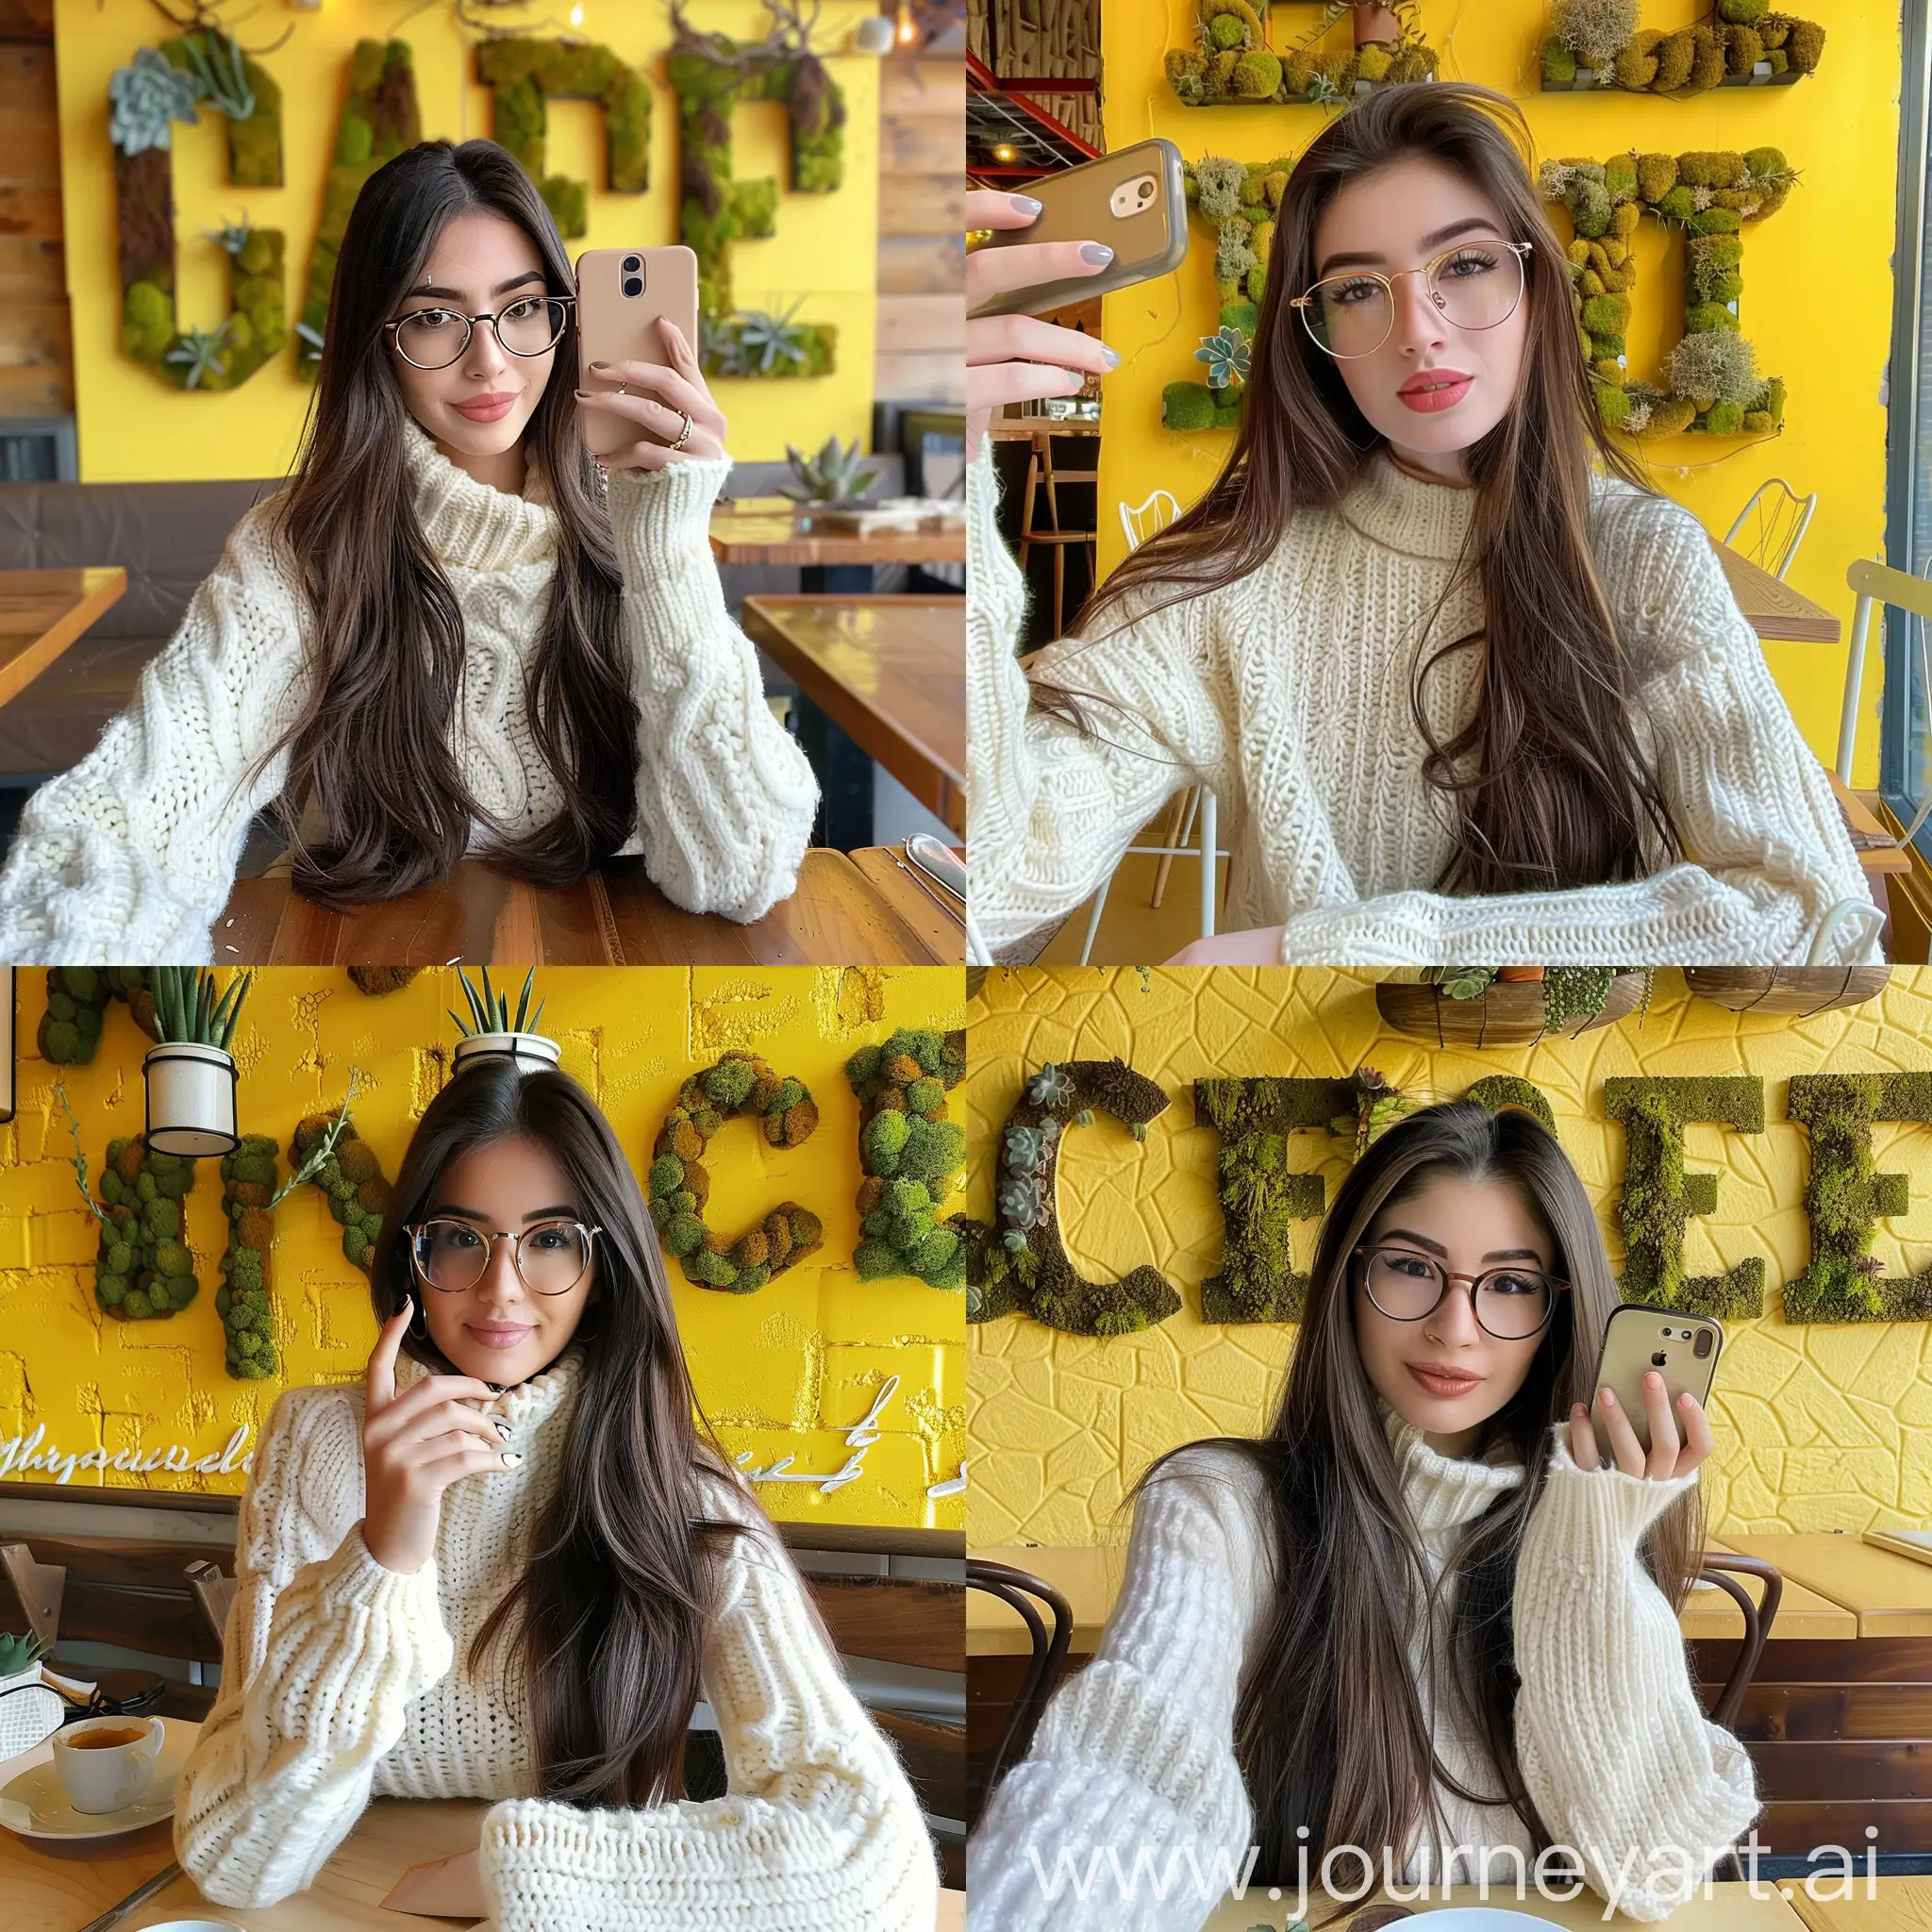 Красивая девушка шатенка с длинными волосами в очках за столиком в кафе в белом свитере делает селфи, фон желтая стена с буквами в виде зеленого мха и суккулентов.